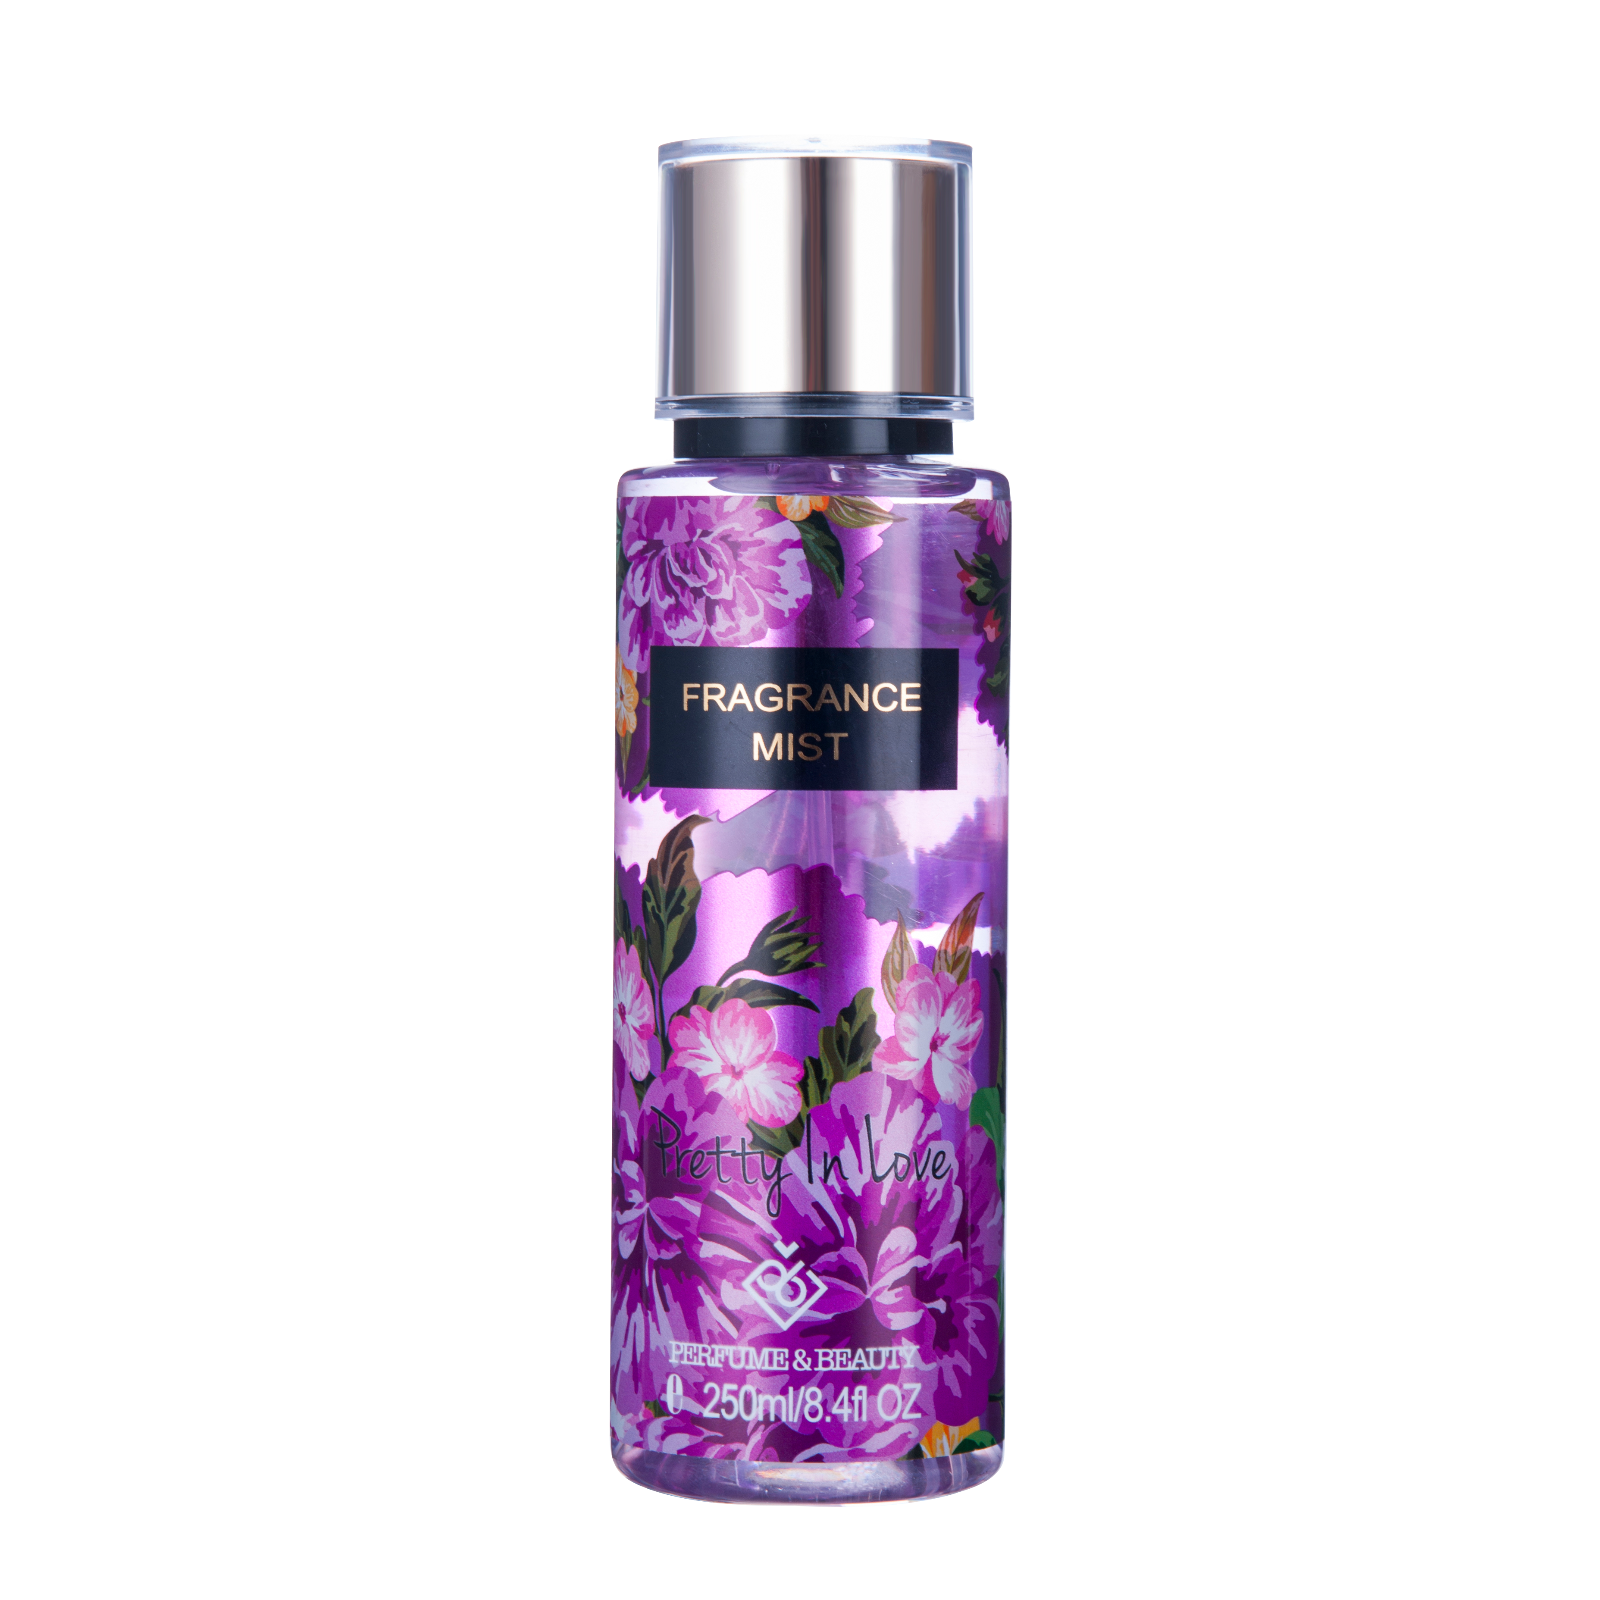 Clearance Sale! Perfume&beauty Fragrance Body Mist For Women Spray 8.4oz 250ml